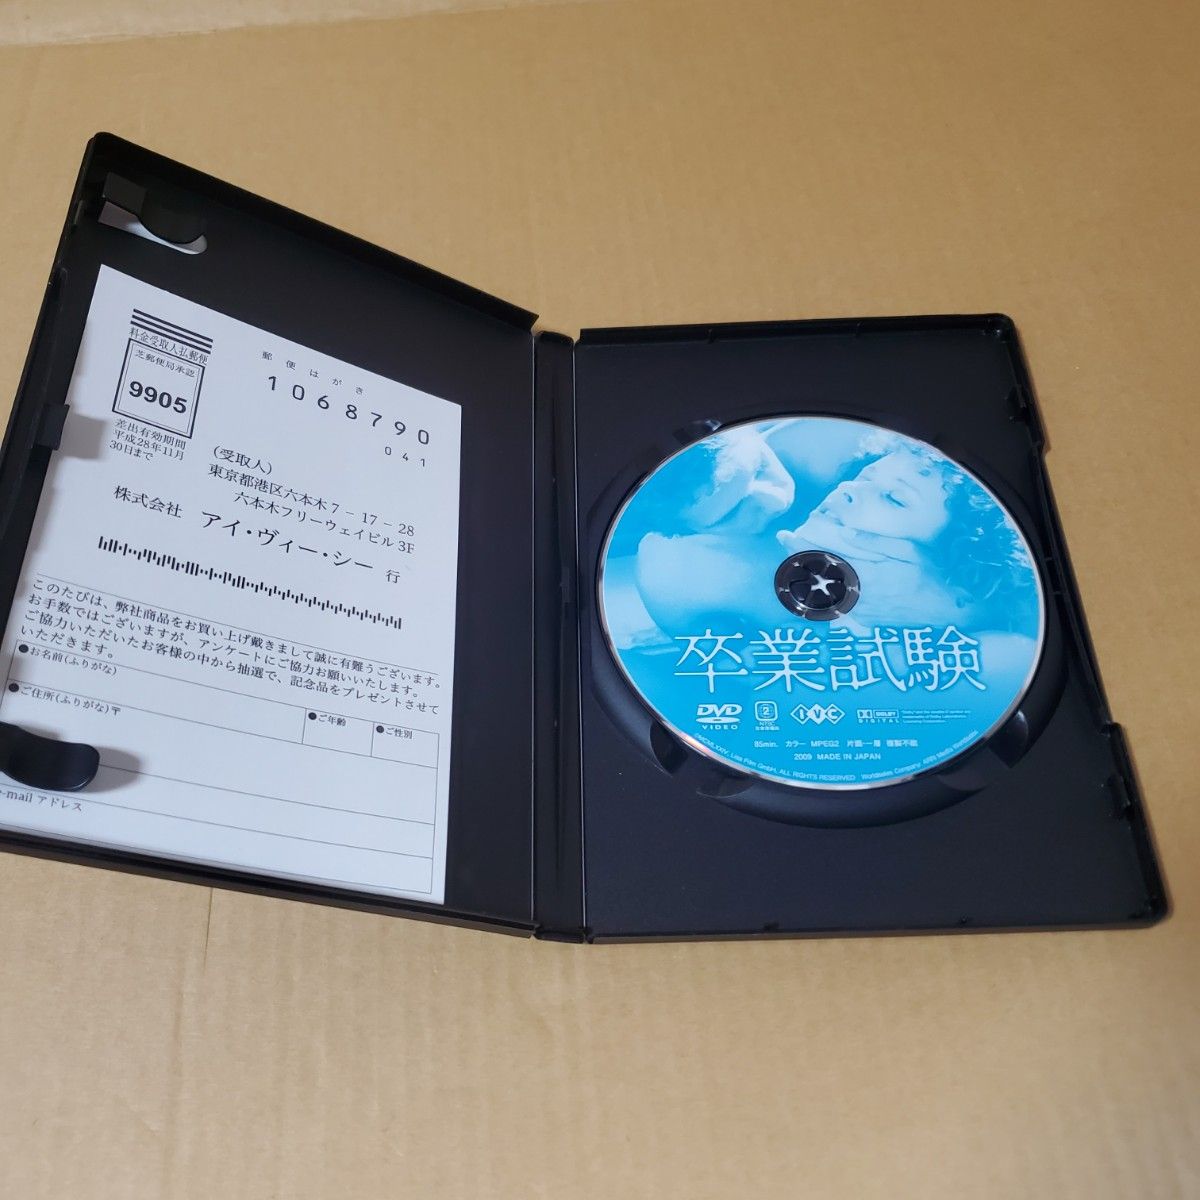 シルヴィア・クリステル「卒業試験」中古DVD　セル版